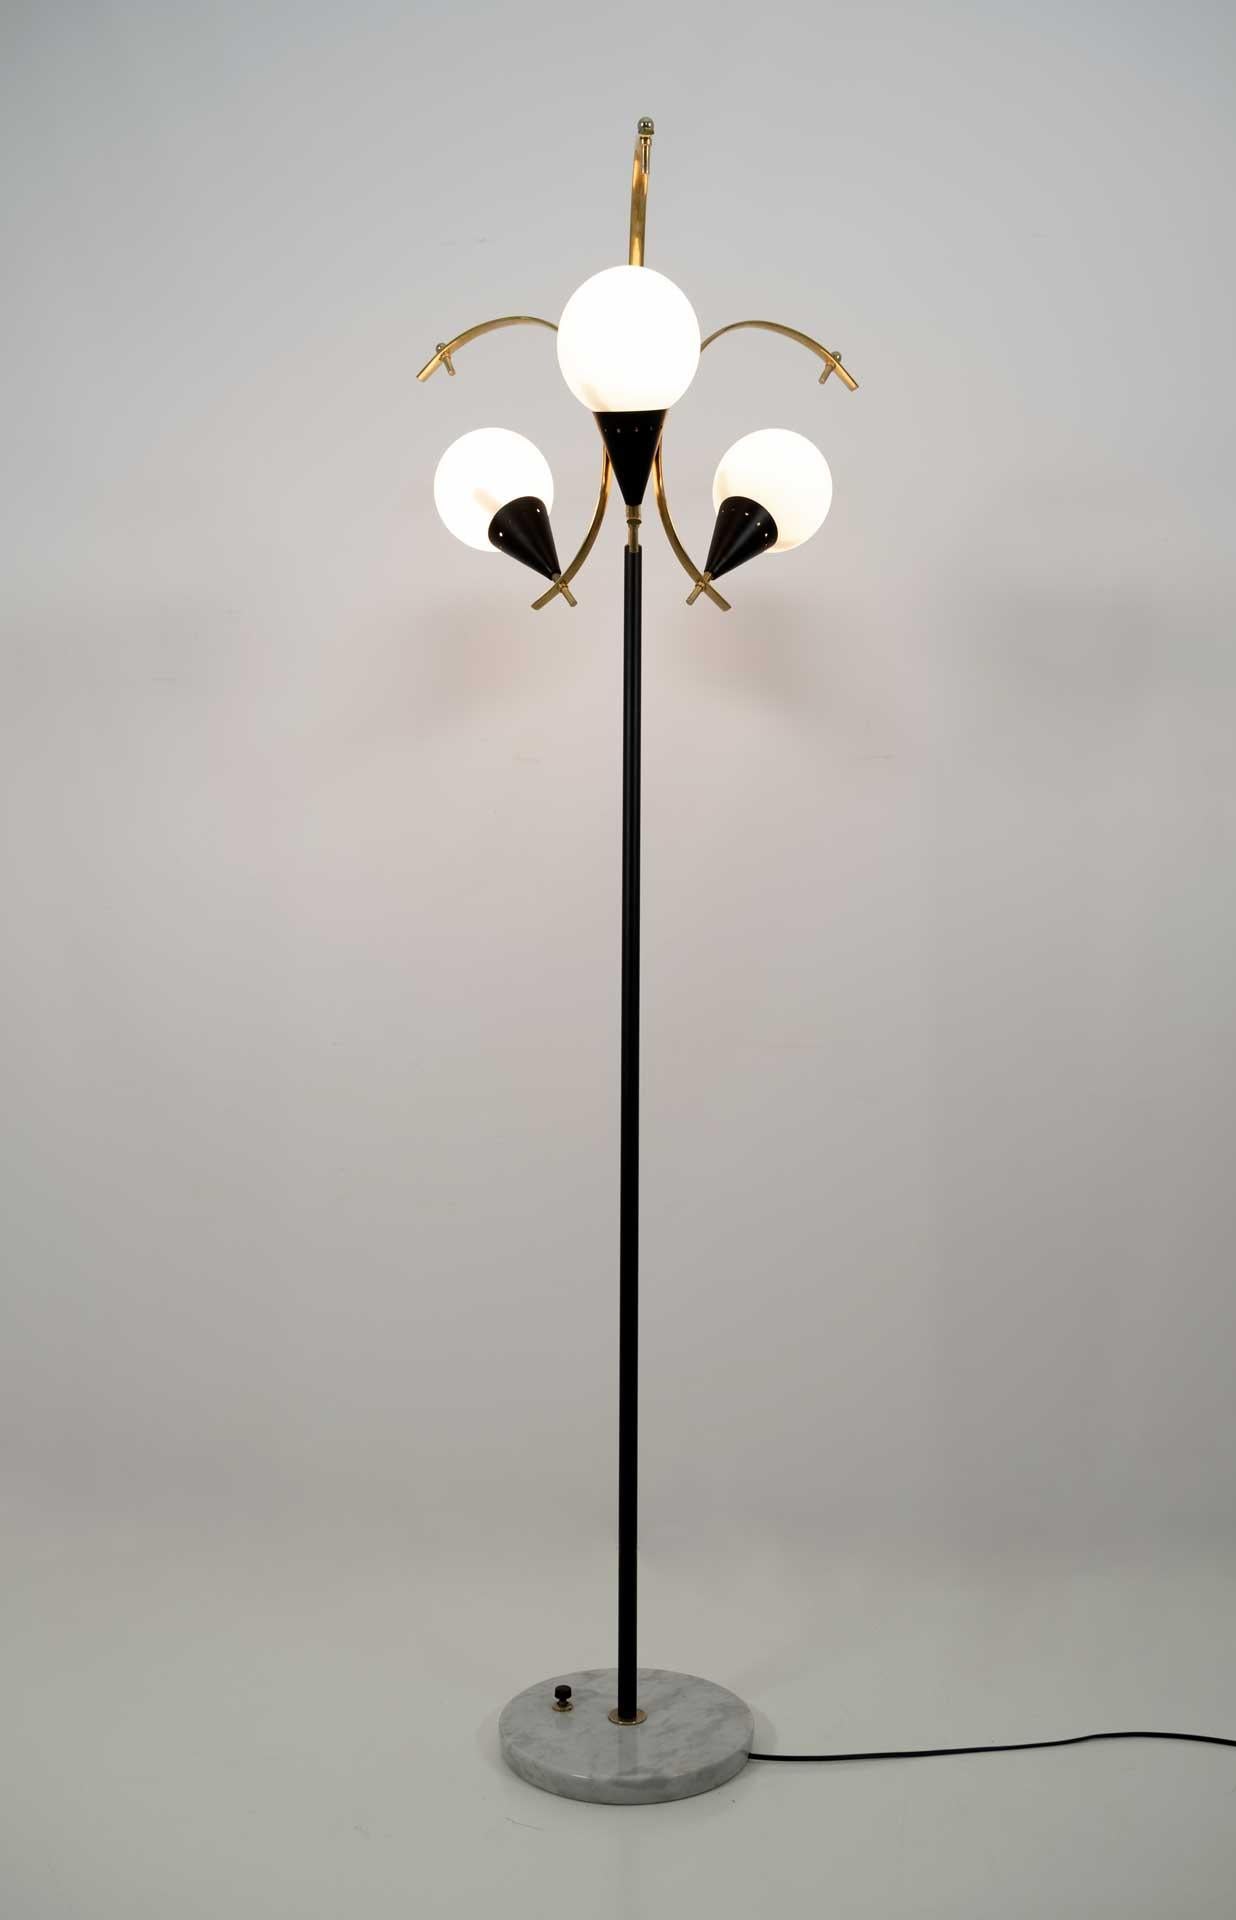 Lampadaire en laiton poli, métal laqué noir, verre opalin et base en marbre. Produit par Stilnovo en Italie dans les années 1950.
La lampe a été entièrement restaurée et polie.